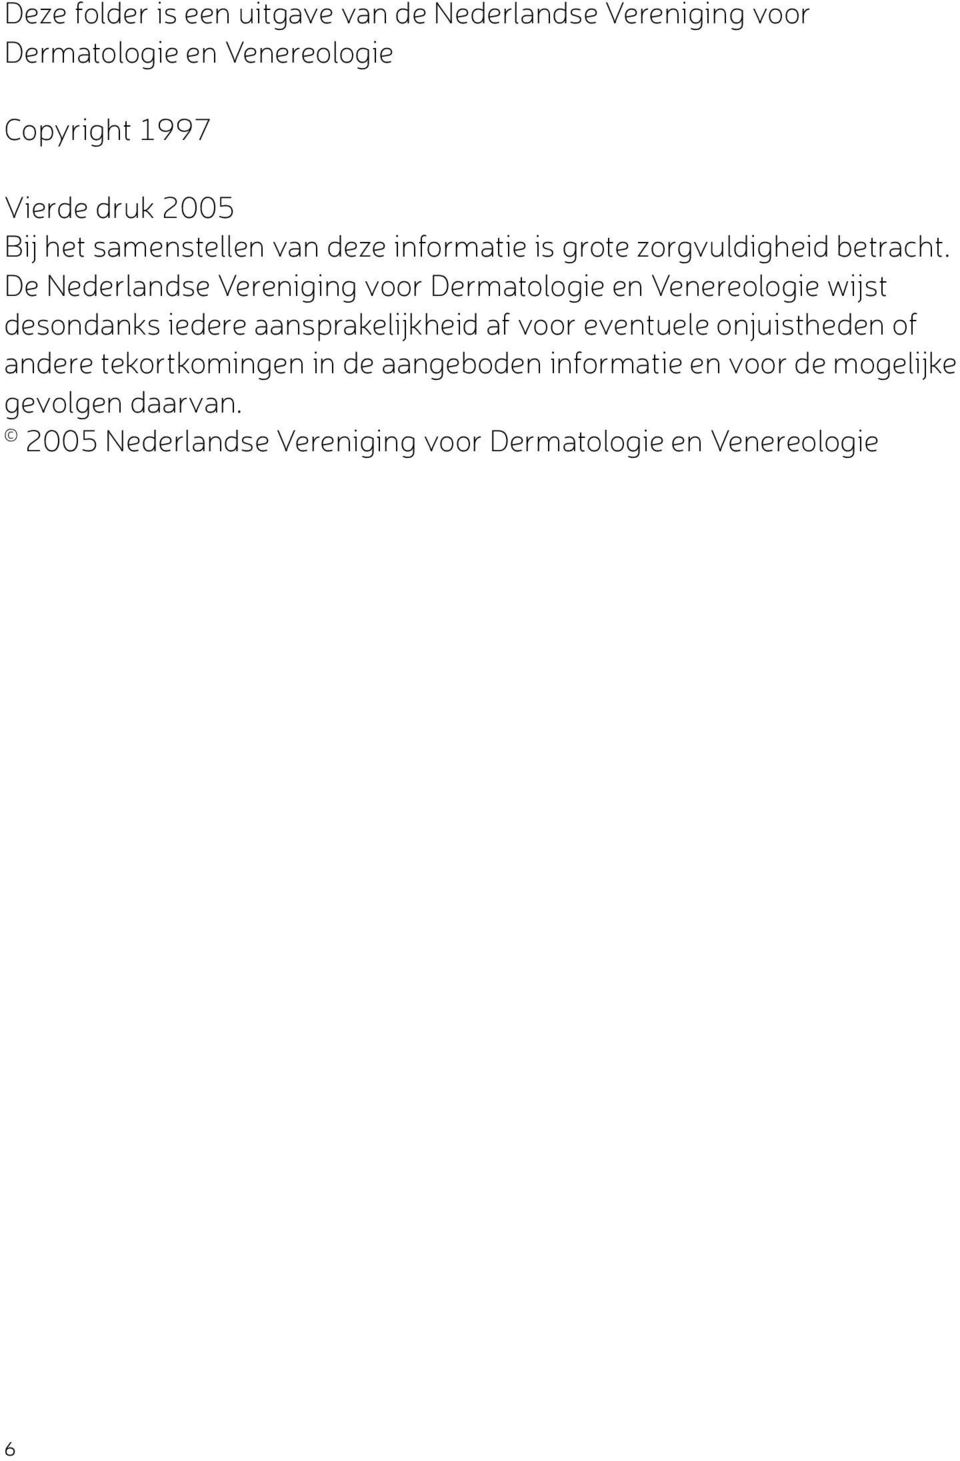 De Nederlandse Vereniging voor Dermatologie en Venereologie wijst desondanks iedere aansprakelijkheid af voor eventuele